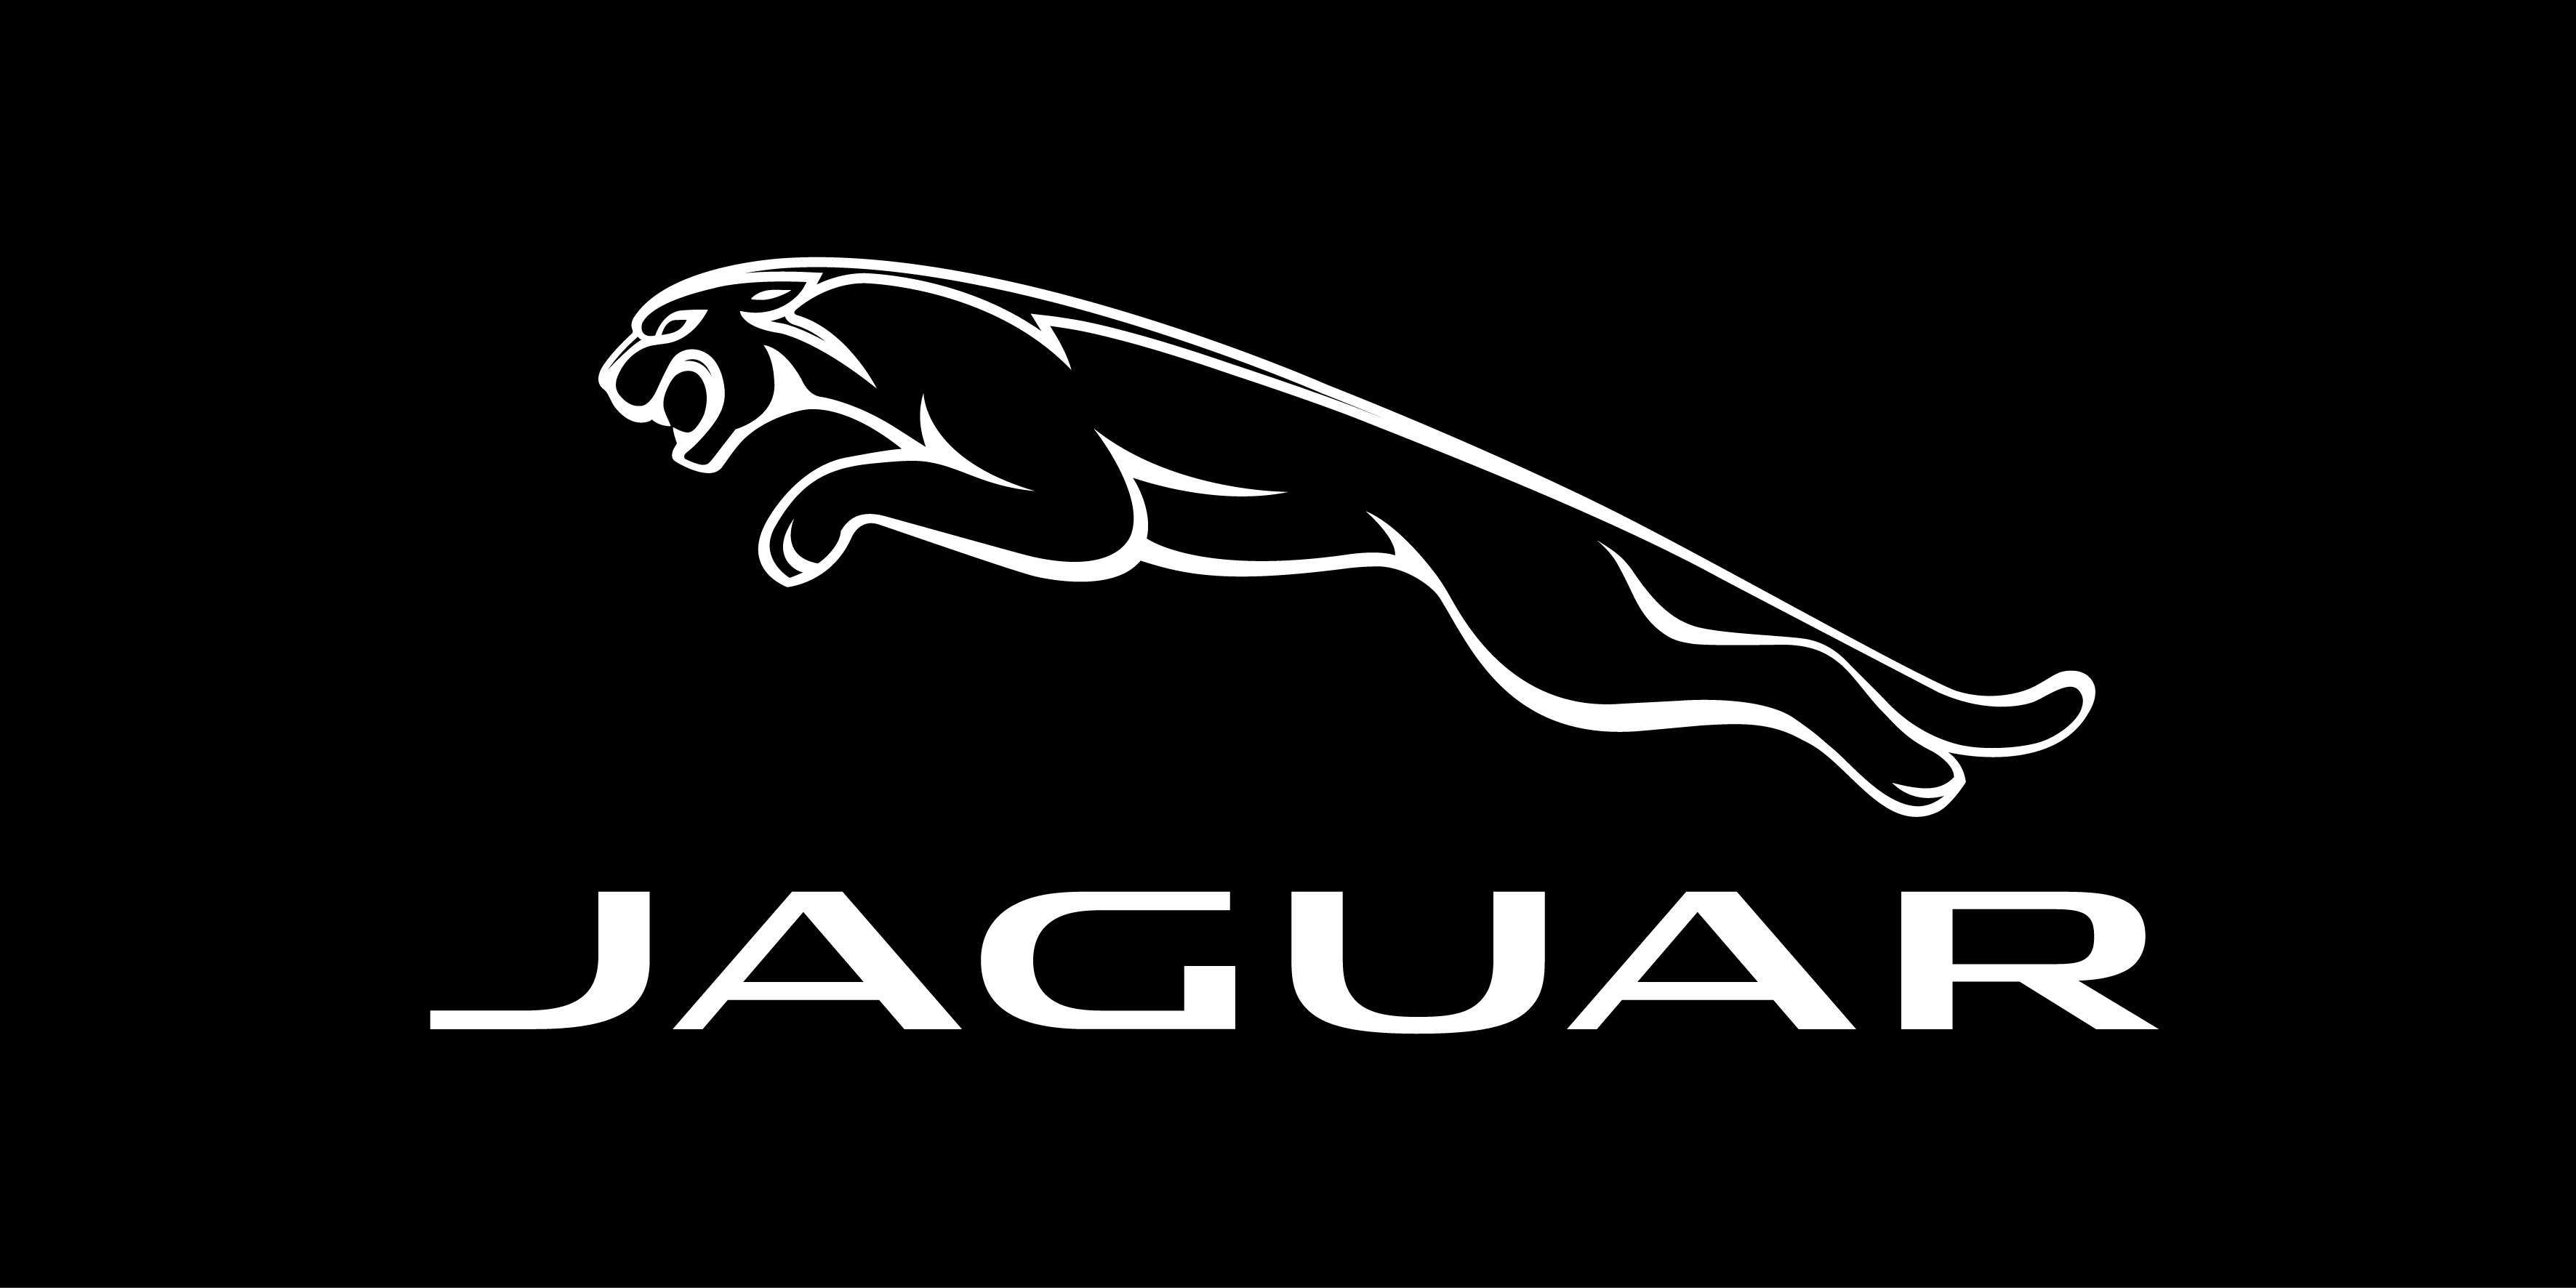 Jaguar Car Logo Hd Wallpaper